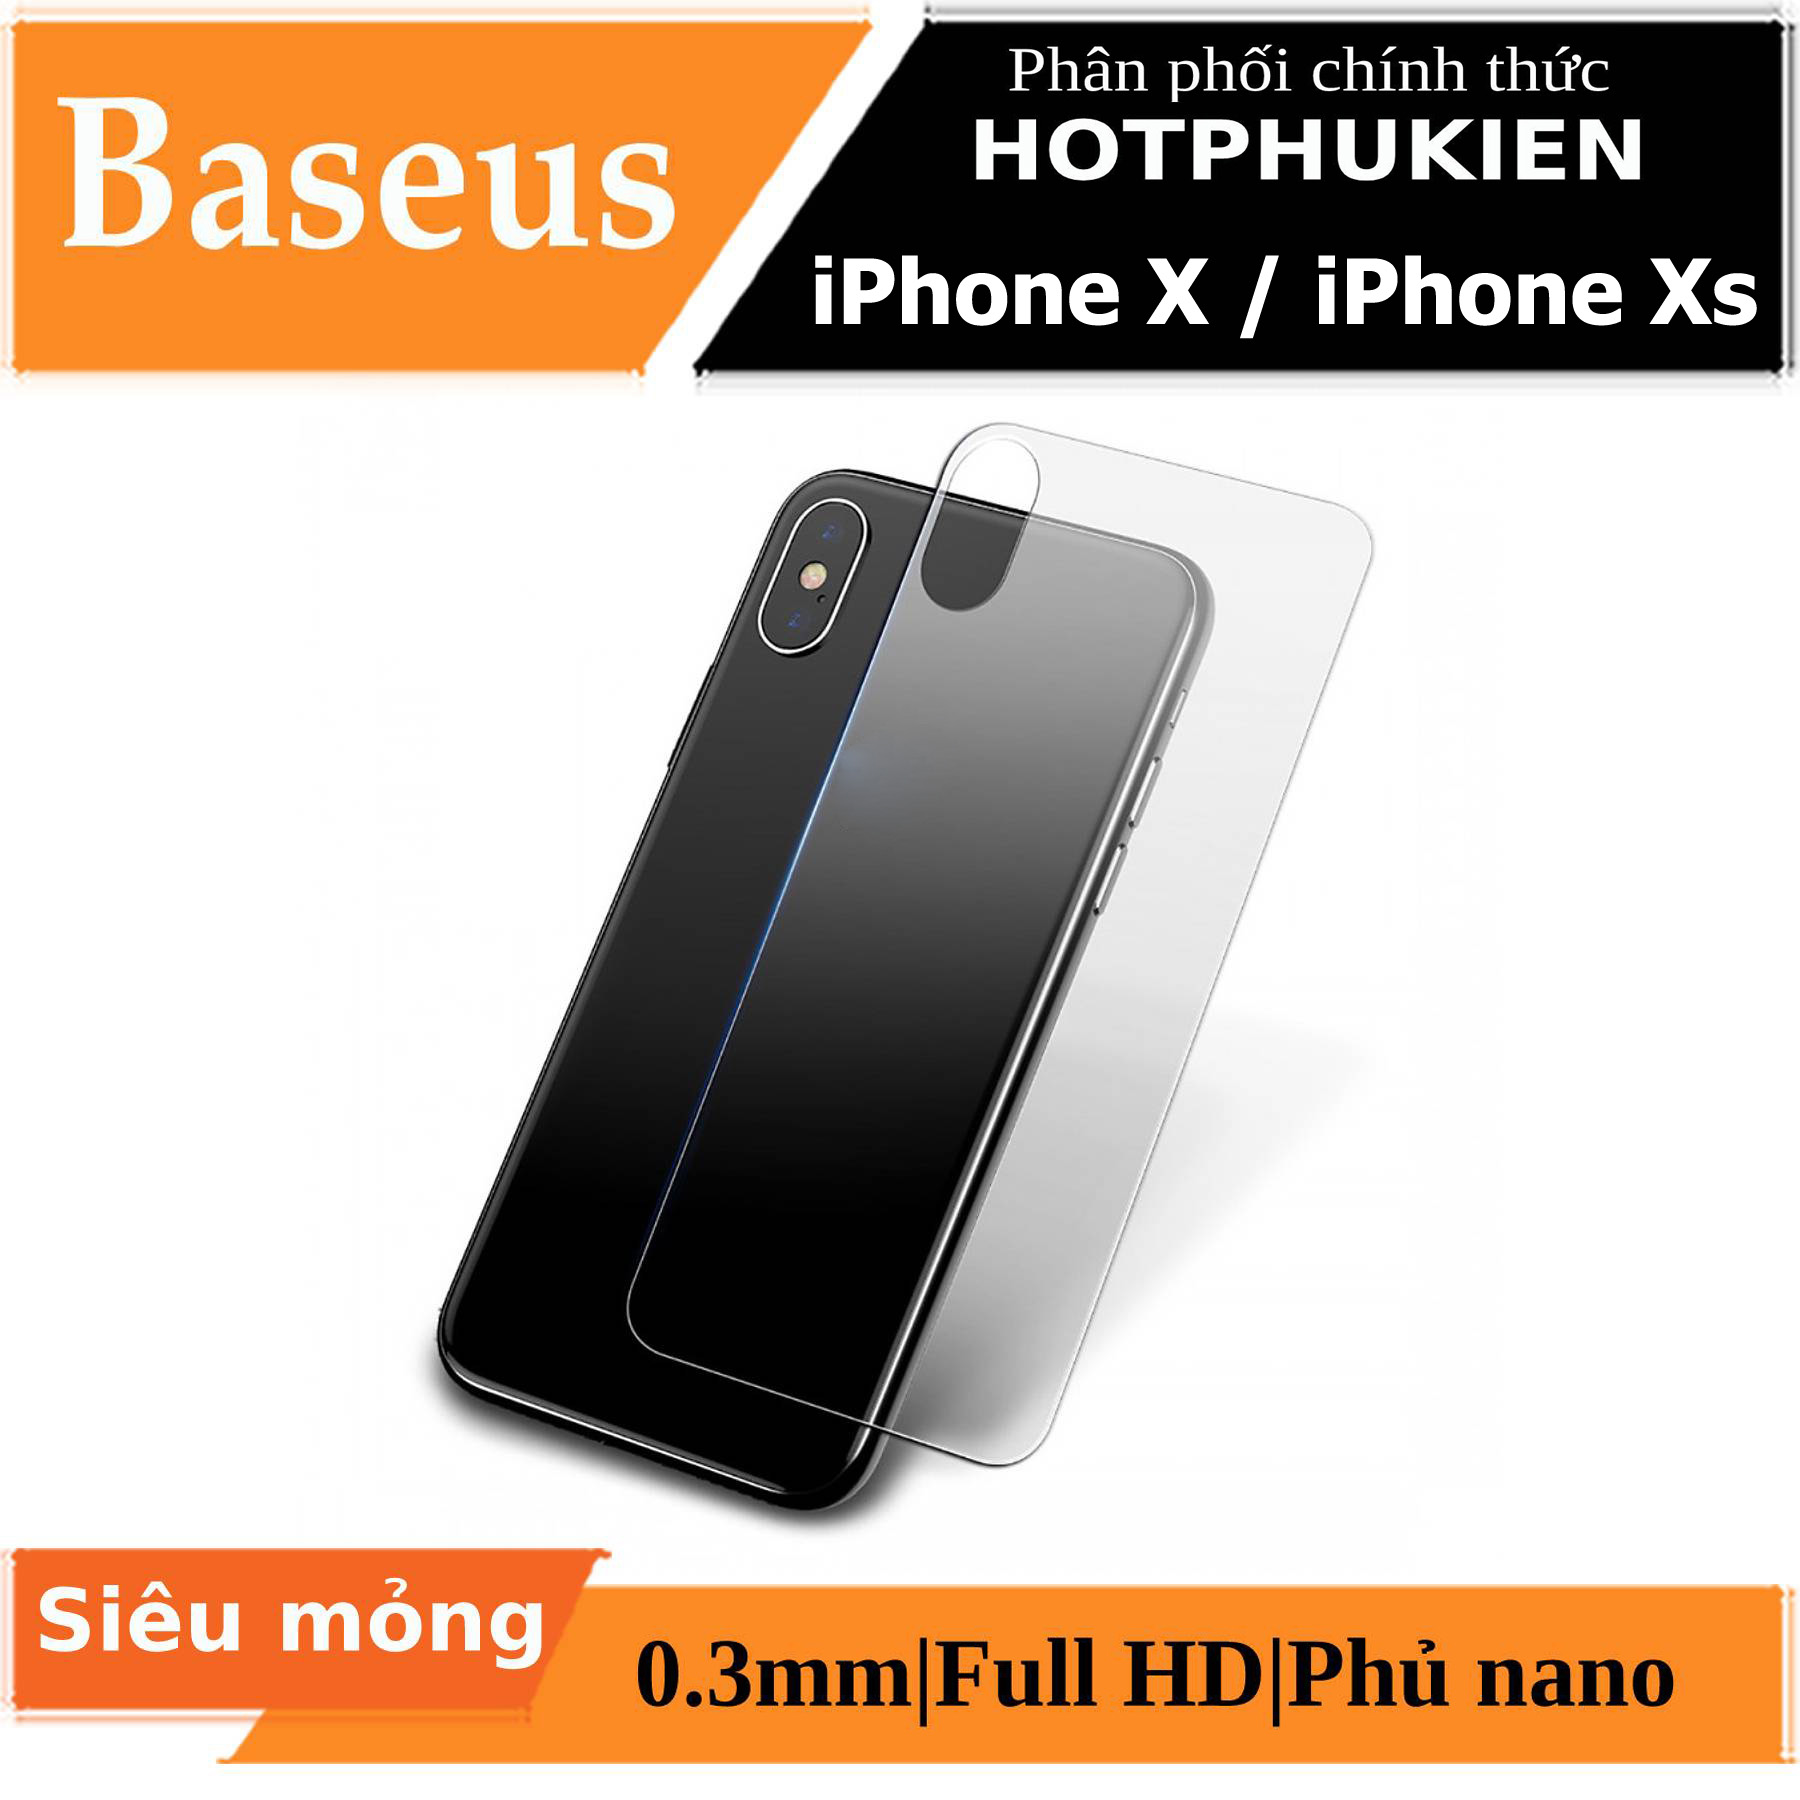 Miếng dán kính cường lực mặt lưng trong suốt cho iPhone X / iPhone Xs hiệu Baseus